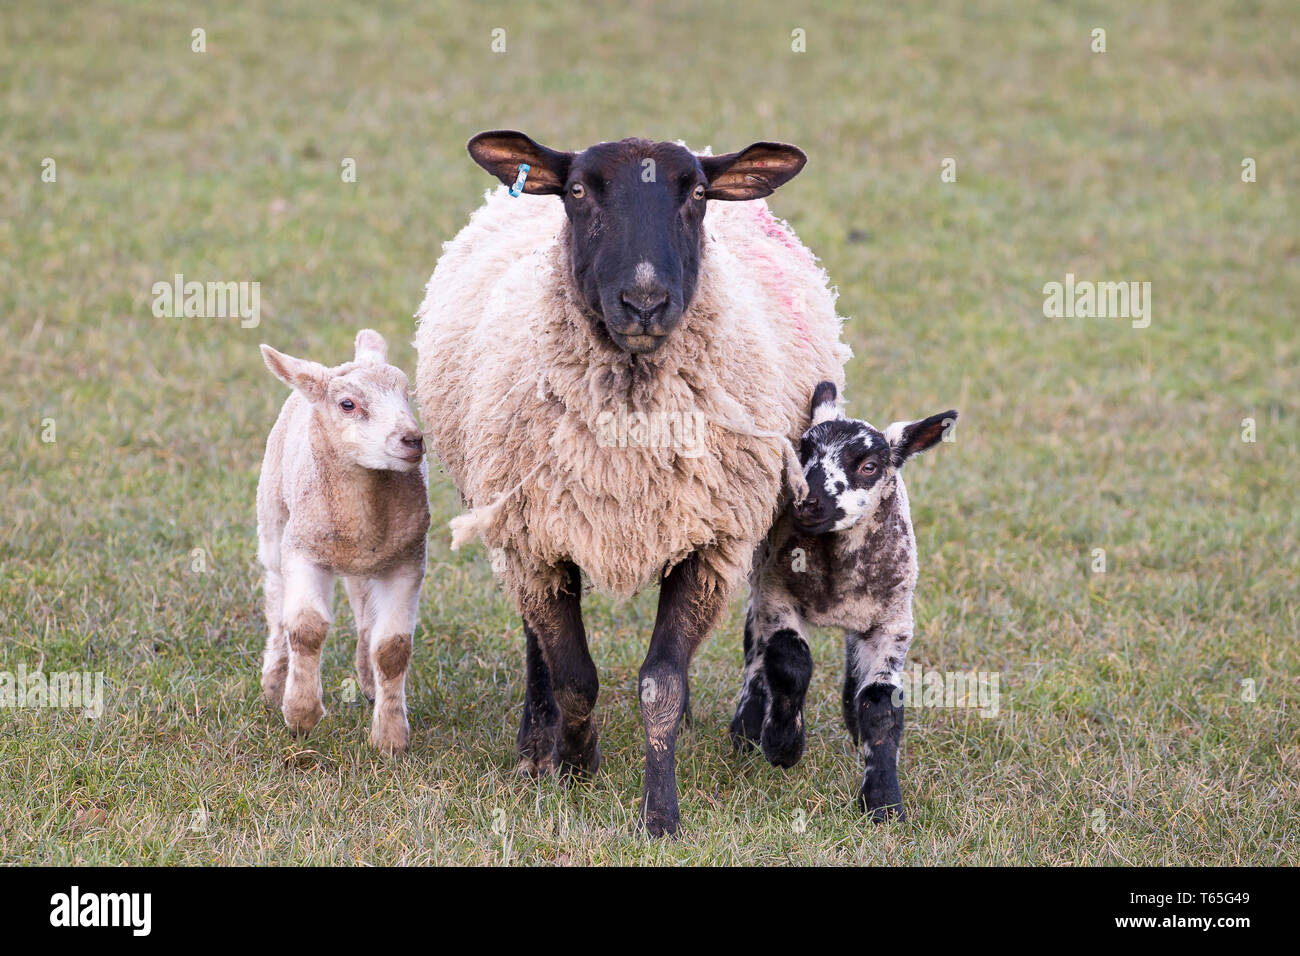 Chiudi, vista frontale della pecora madre con due agnelli, uno su ogni lato, tutti gli animali rivolti in avanti, in piedi sul prato. L'agricoltura del Regno Unito nella stagione della laminazione. Foto Stock